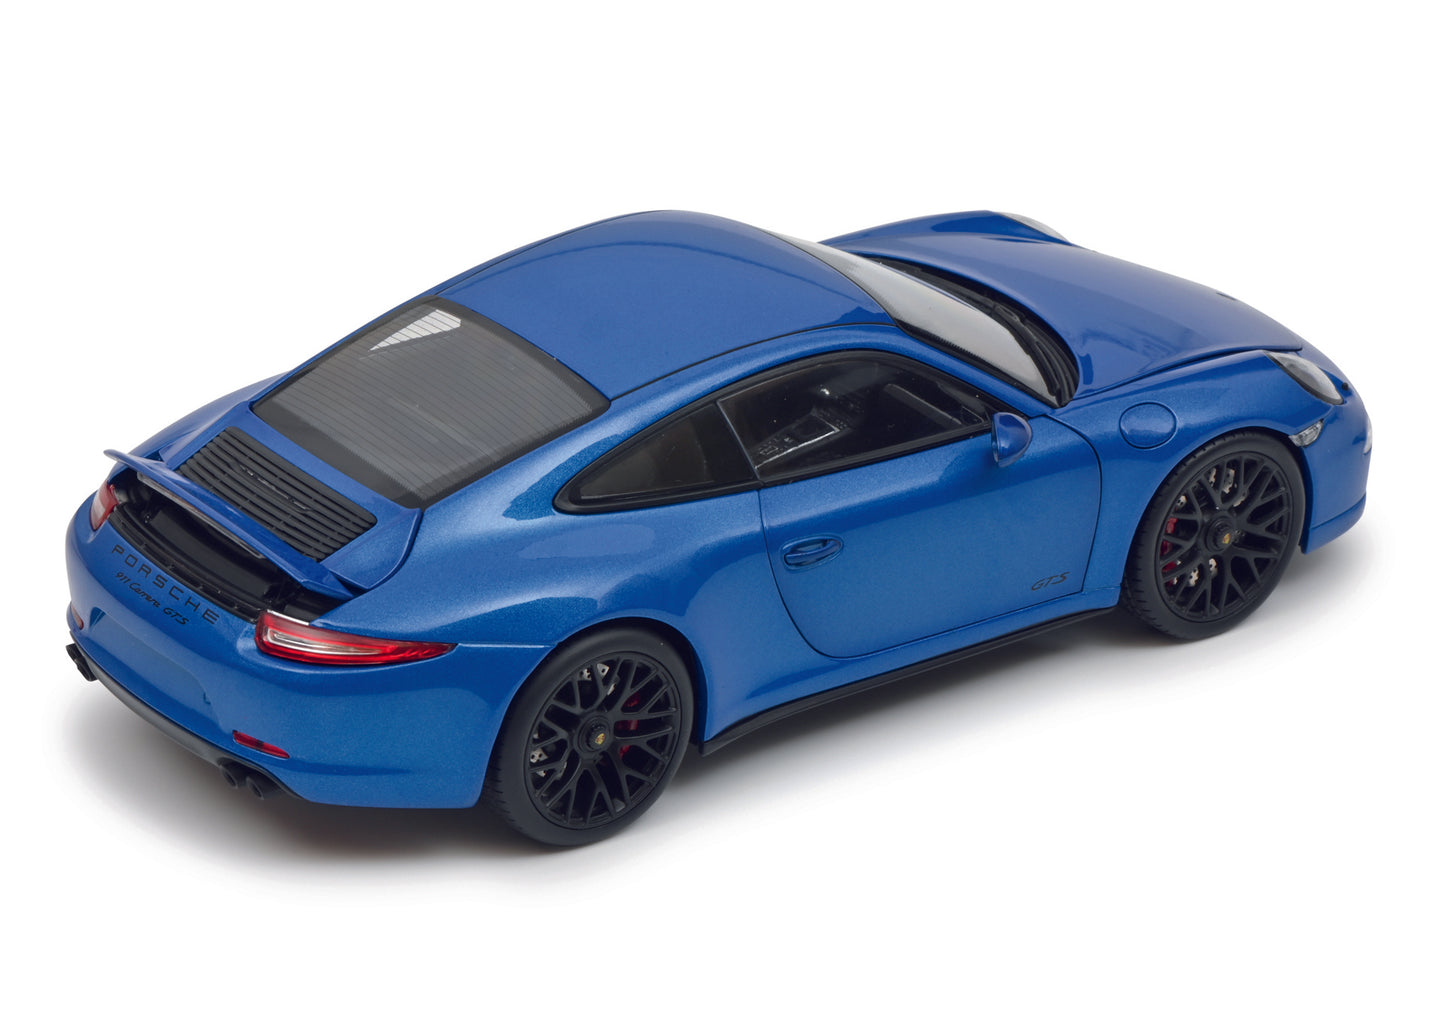 Schuco 450039700 - Porsche GTS Coupé blue 1:18 EAN: 4007864057894, at Ajckids.com, authorized Schuco dealer for the USA.